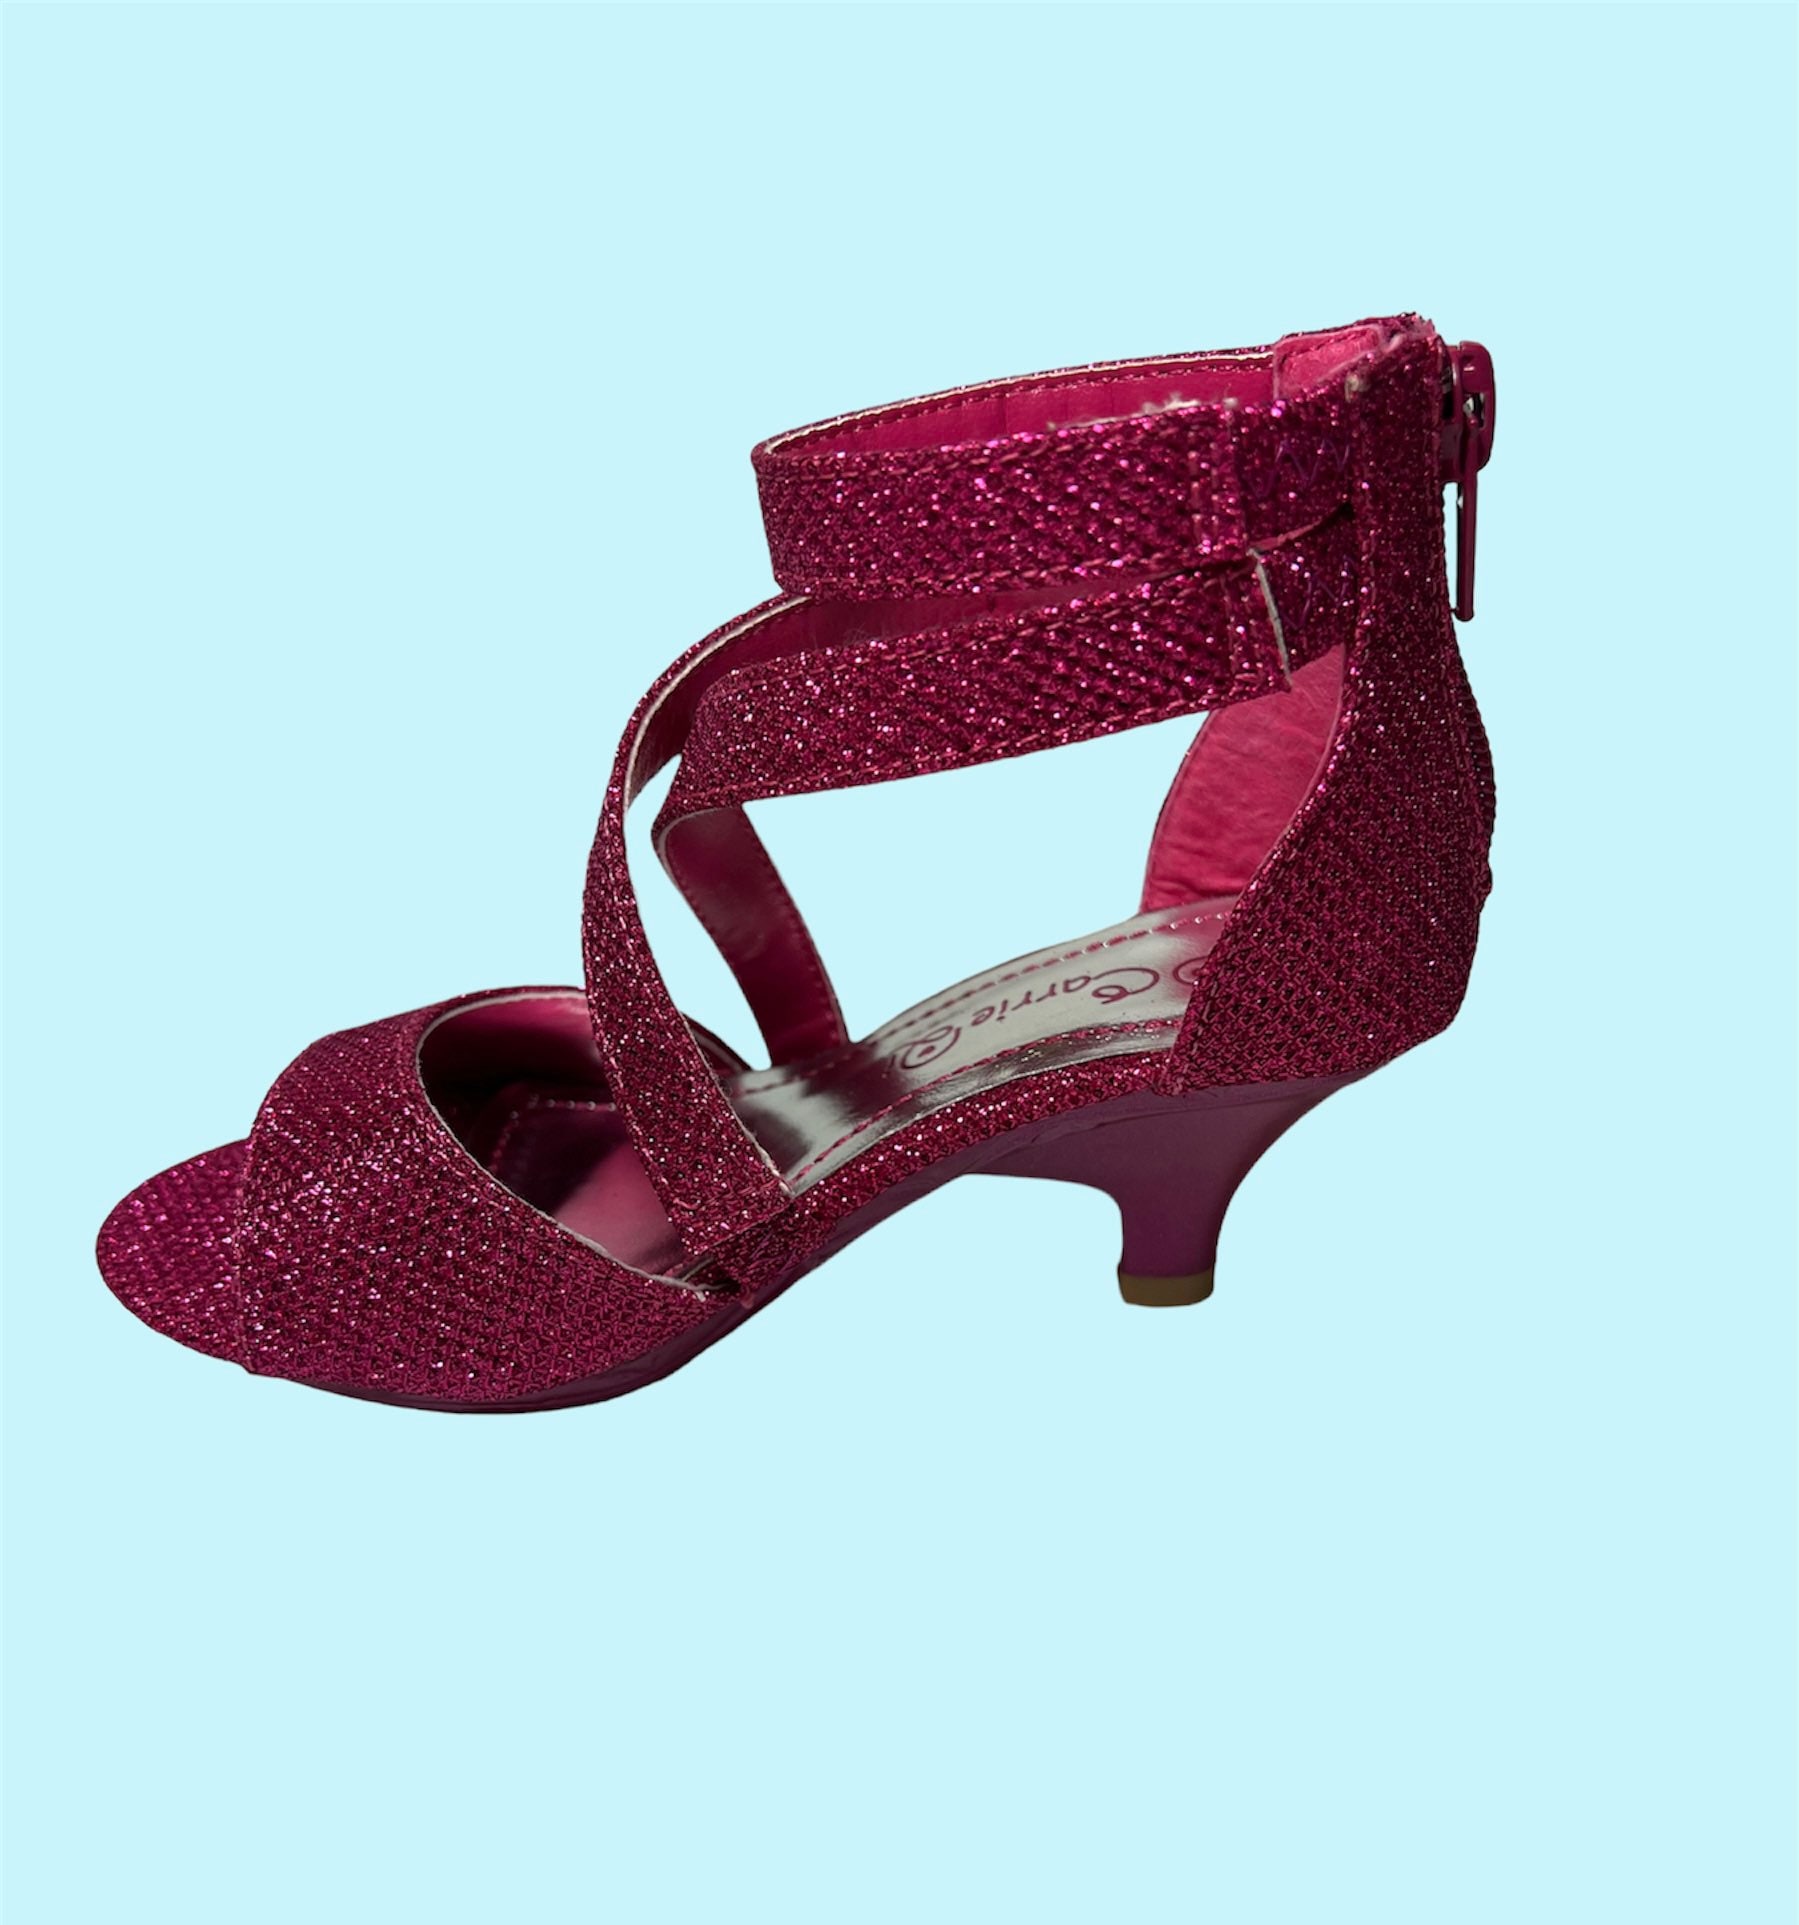 High Heels for Kids, Little Girls High Heel Dress Shoes, Fuchsia Pink ...